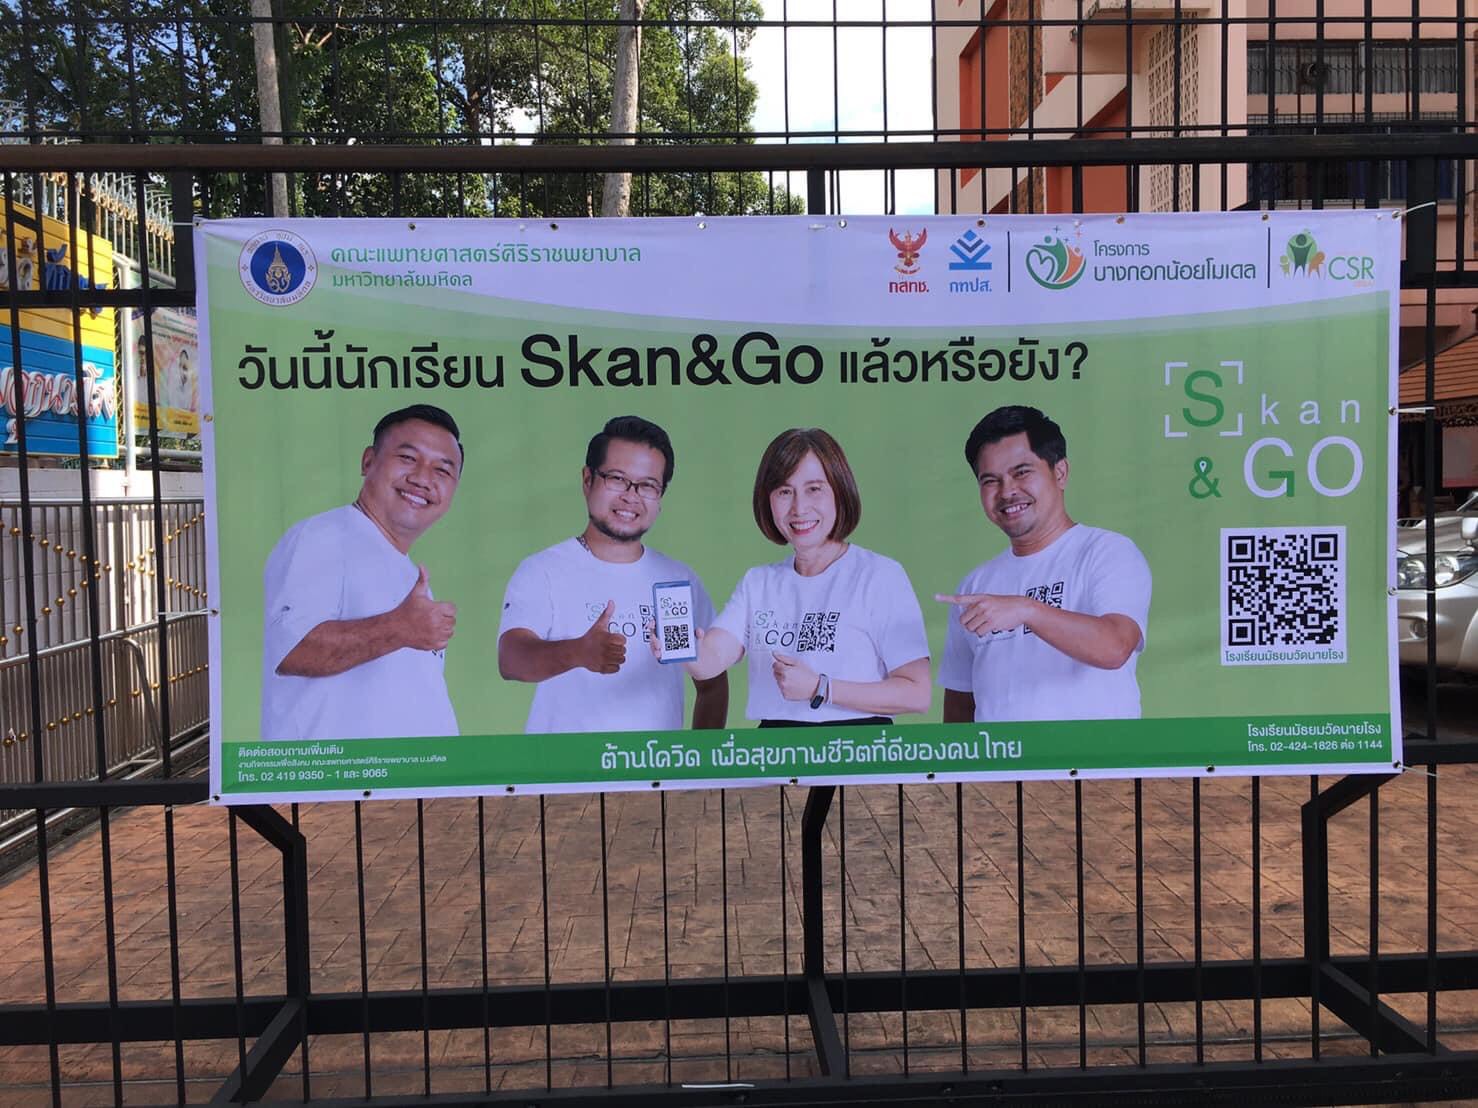 โรงเรียนมัธยมวัดนายโรงเข้าร่วมโครงการ Skan & Go ต้านโควิด by Siriraj